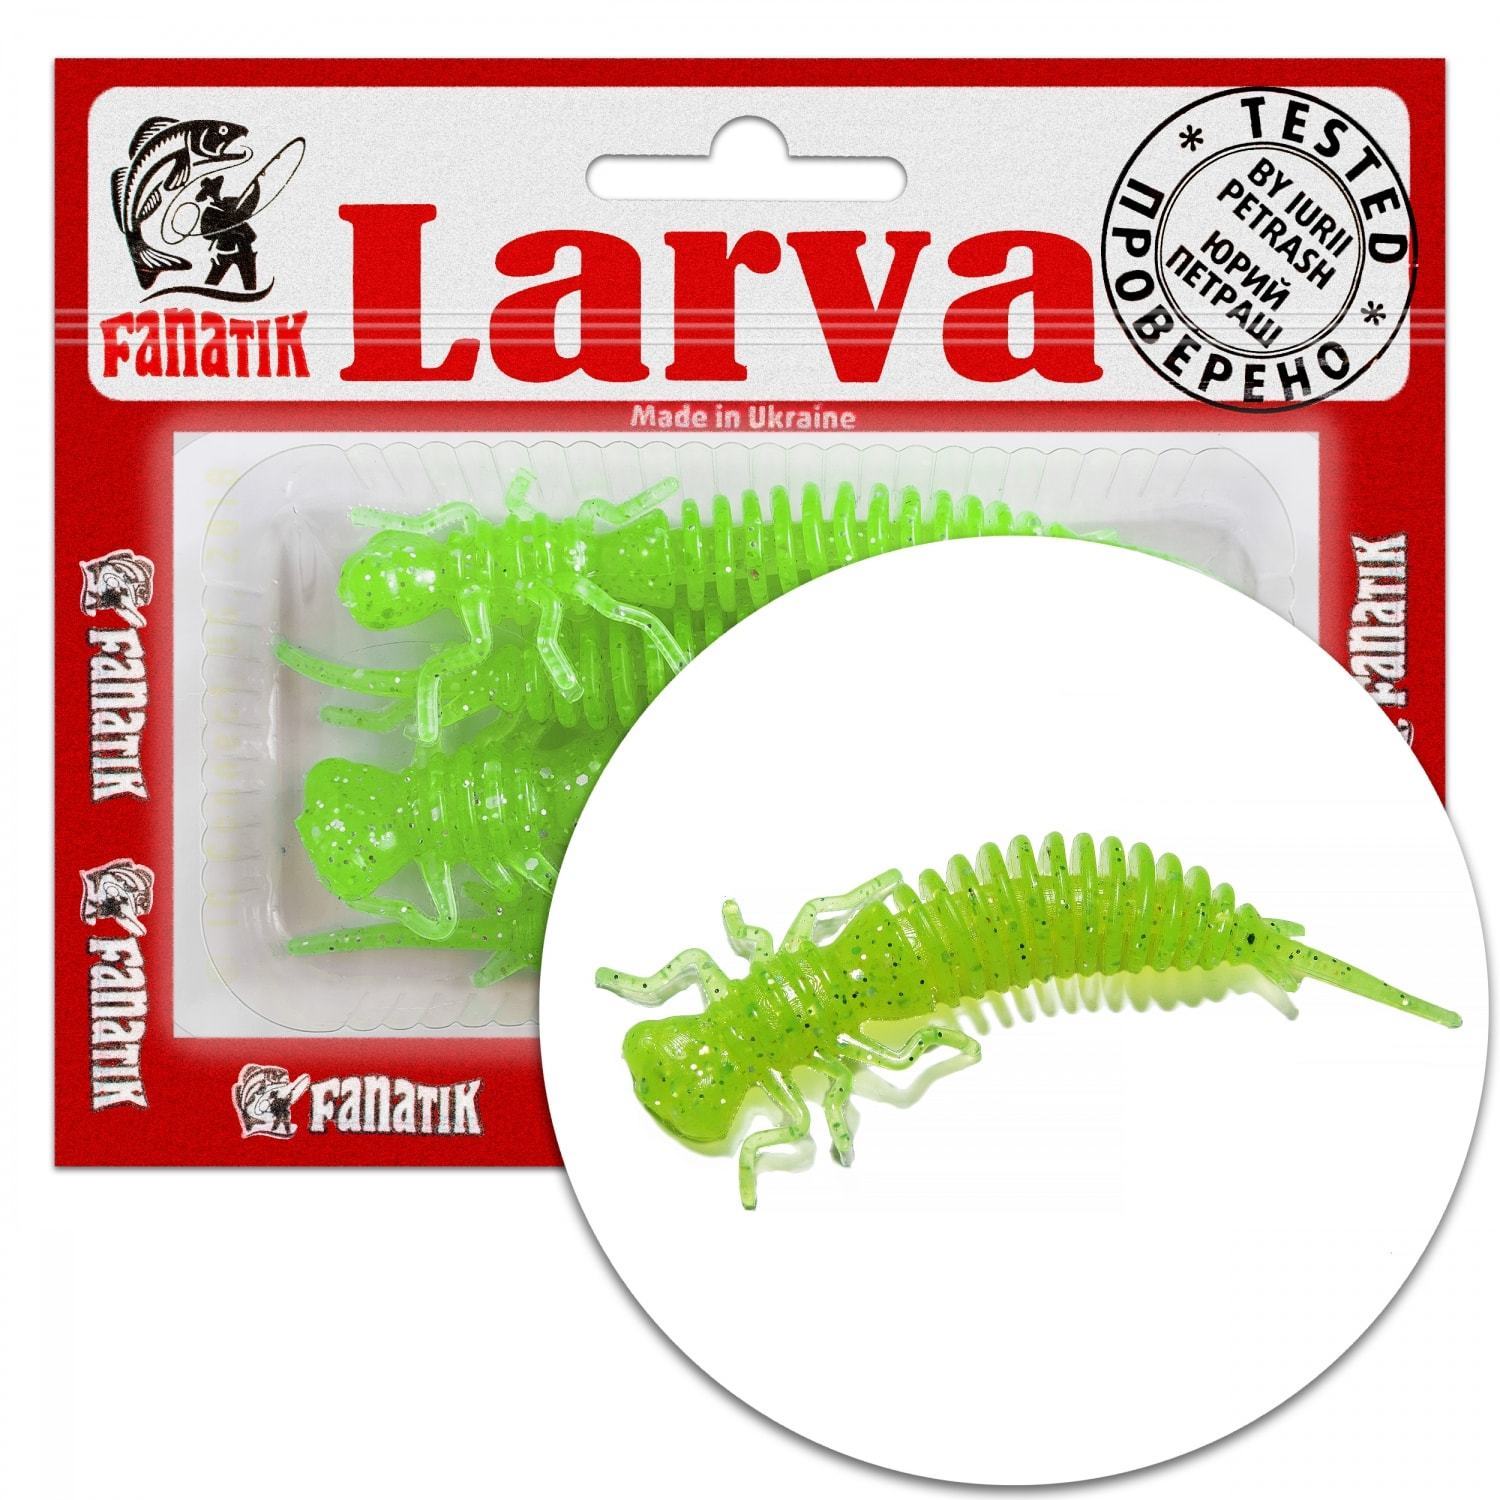 https://fanatik-baits.co.uk/media/image/b3/30/f4/larva-vitrinasVPCwaLKSqiSH.jpg